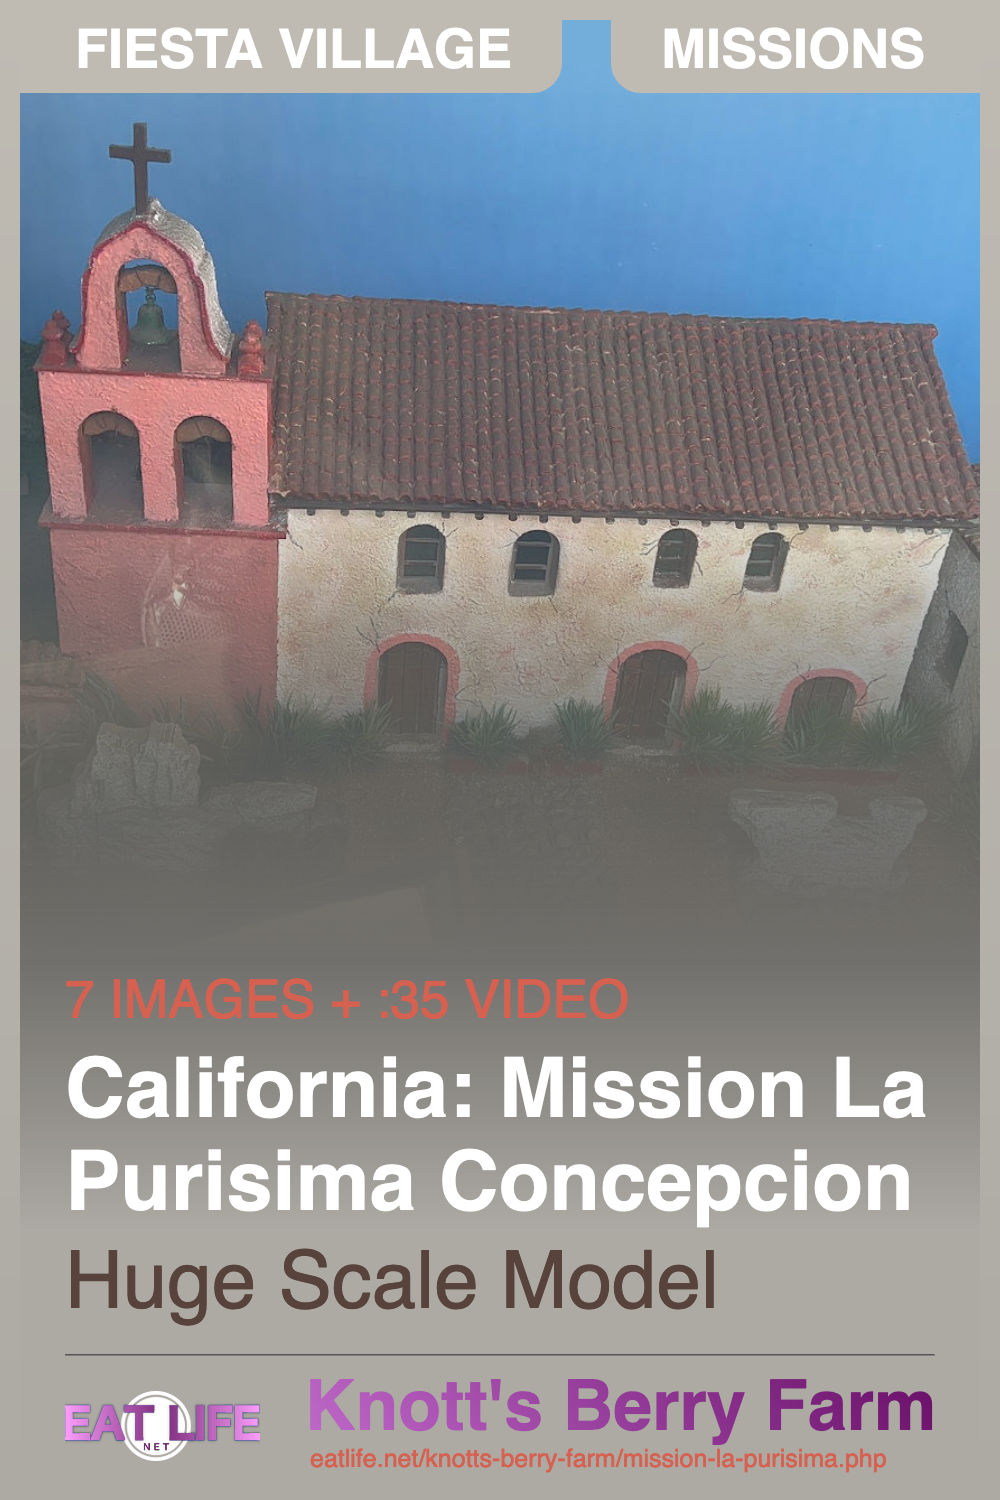 Mission La Purisima Concepcion